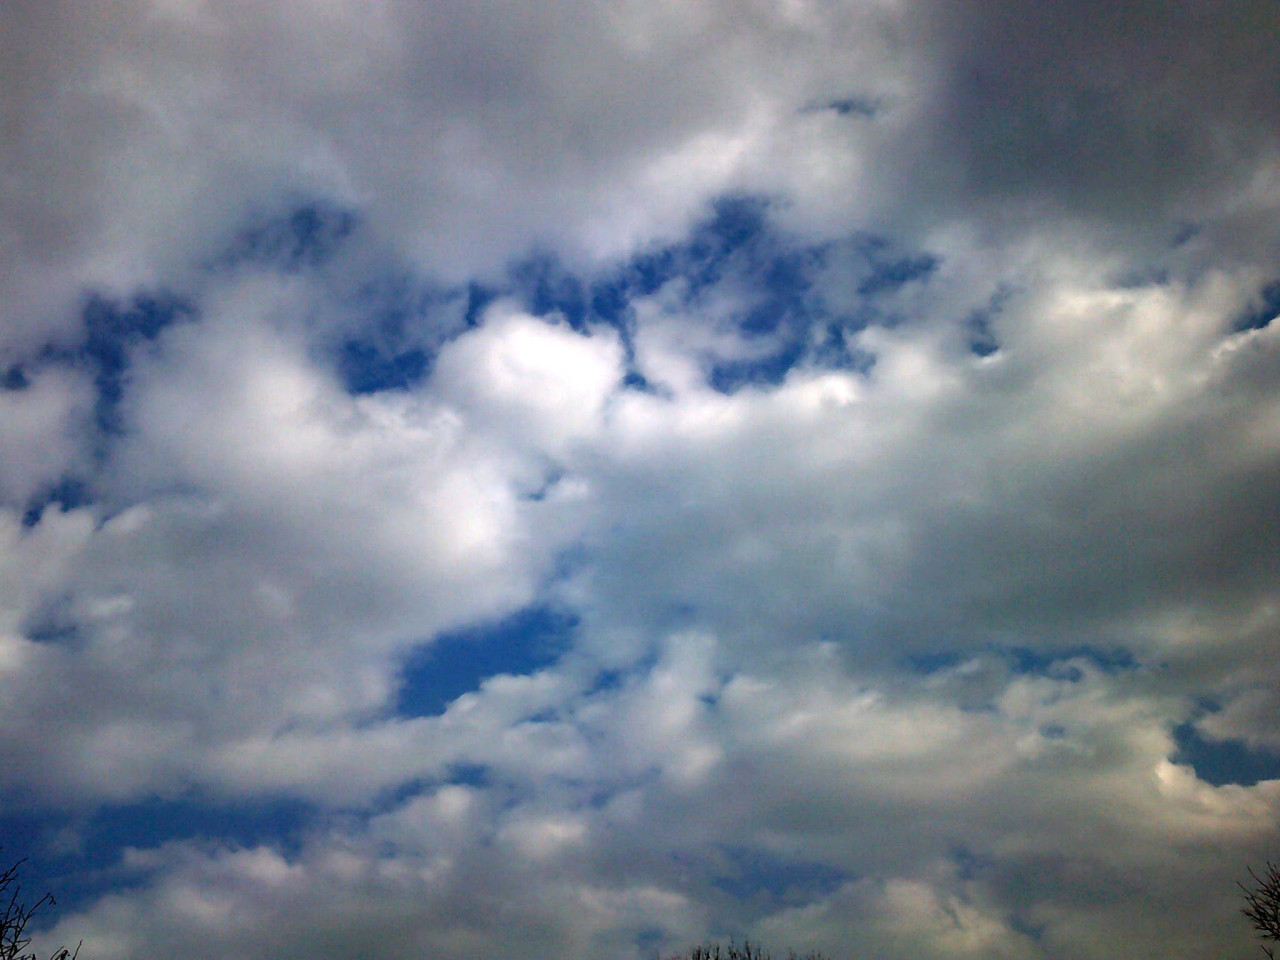 Meteo Villafrati: oggi lunedì 28 Agosto cielo nuvoloso per velature, previste forti raffiche di vento.